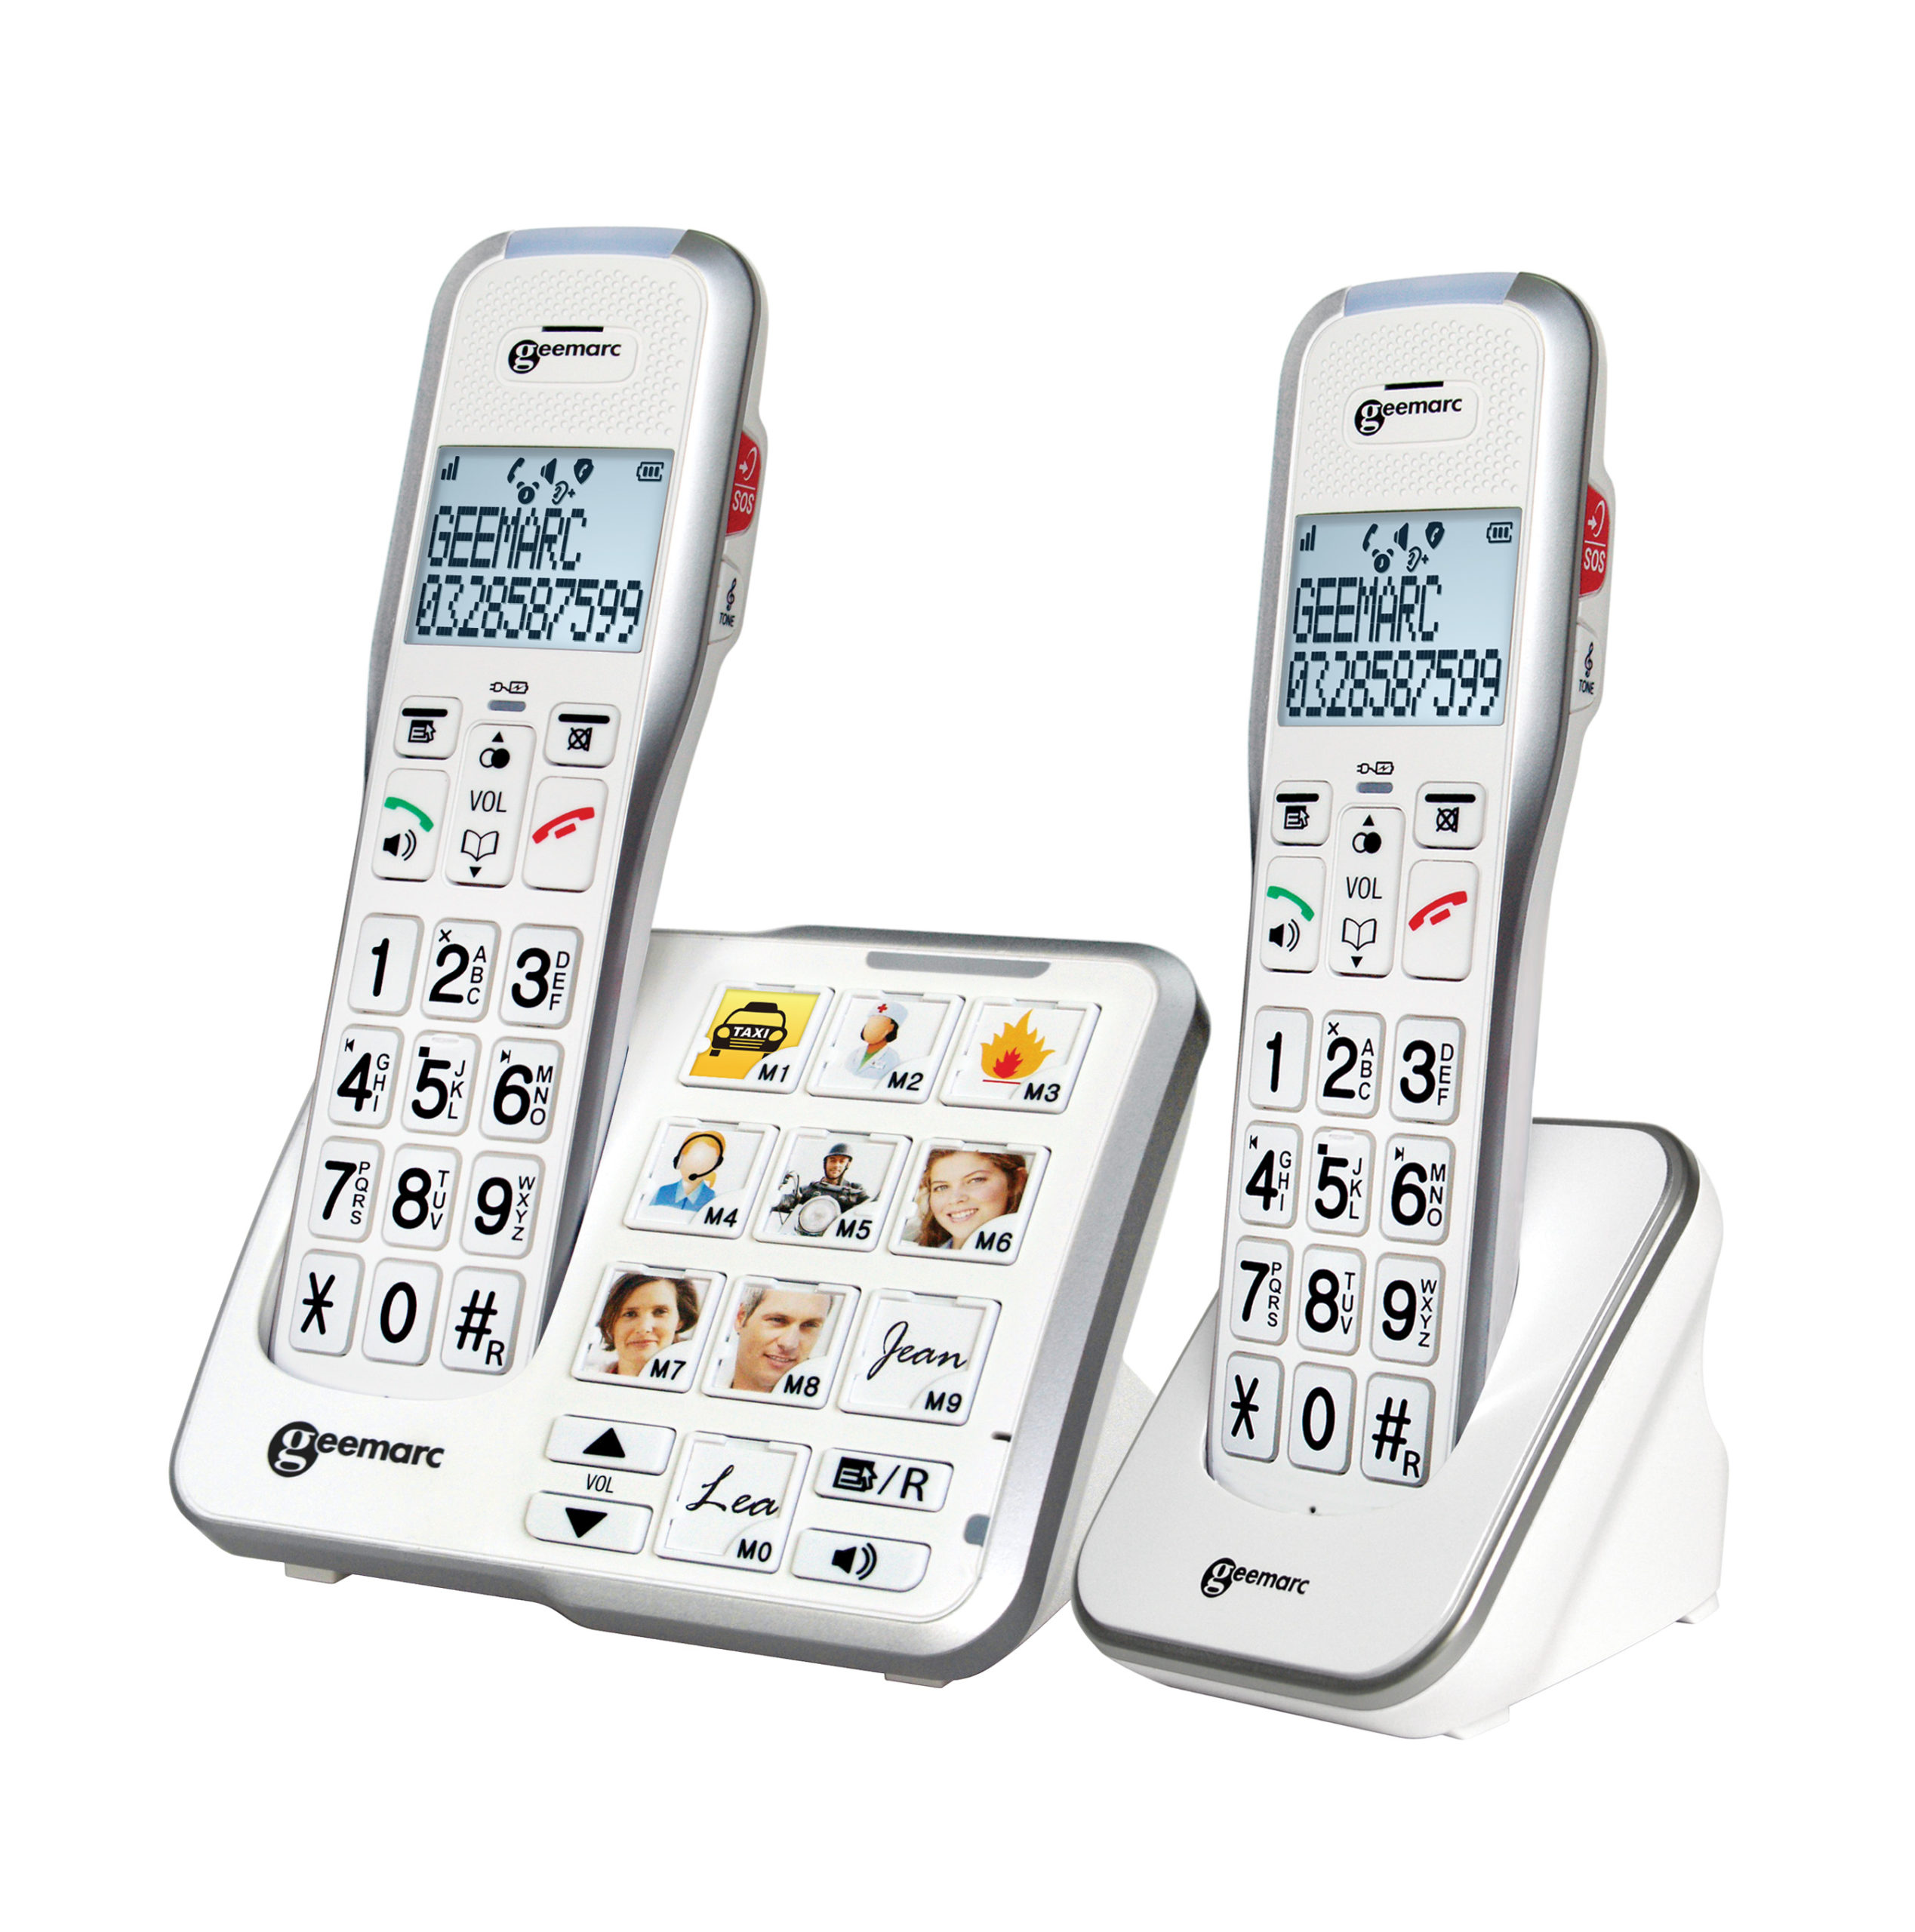 Téléphone à grosses touches Geemarc sans fil duo photo avec répondeur